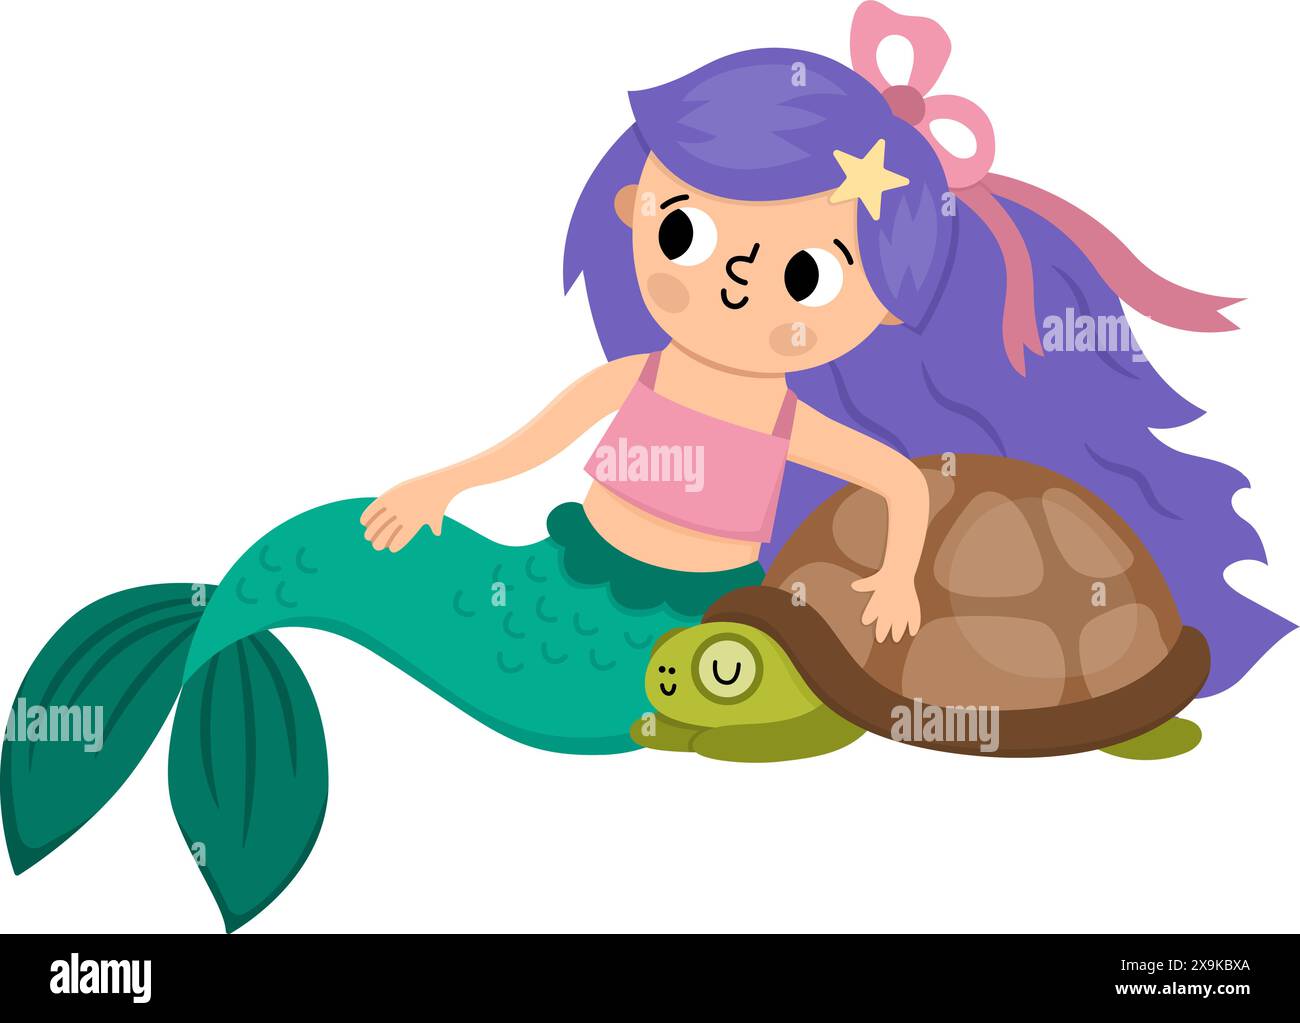 Märchenhafte Vektor-Meerjungfrau mit lila Haaren sitzend mit Schildkröte. Fantasy-Fischmädchen isoliert auf weißem Hintergrund. Märchenhafte Meeresprinzessin. Niedliche Sirene c Stock Vektor